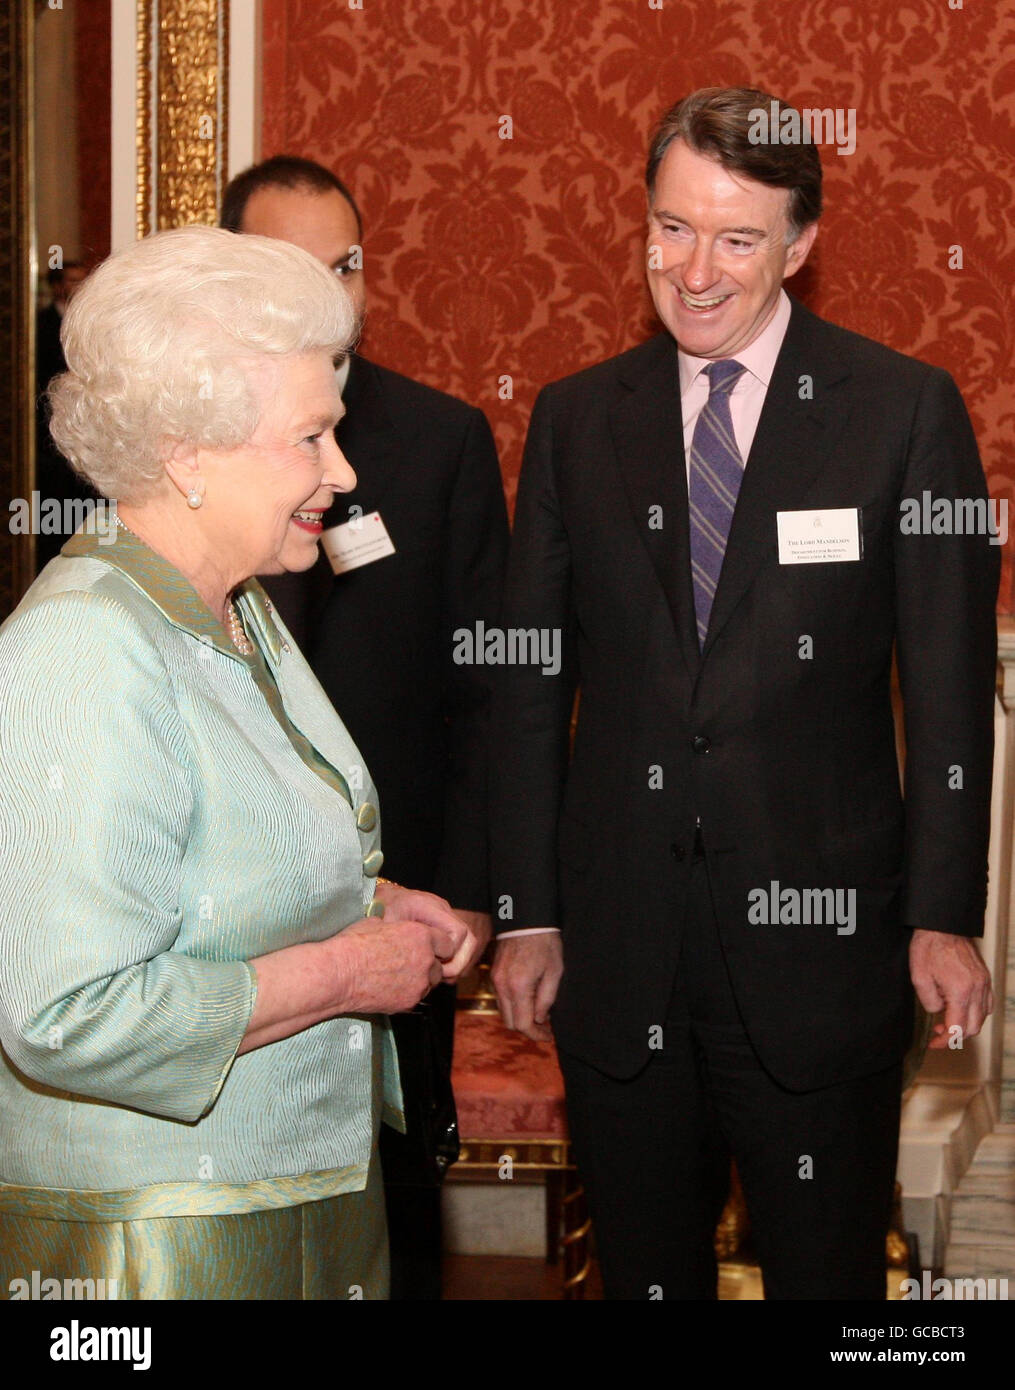 La regina Elisabetta II parla al segretario d'affari Lord Mandelson ad un ricevimento a Buckingham Palace, Londra, tenuto in anticipo della visita di Stato del prossimo mese del presidente del Sudafrica. Foto Stock